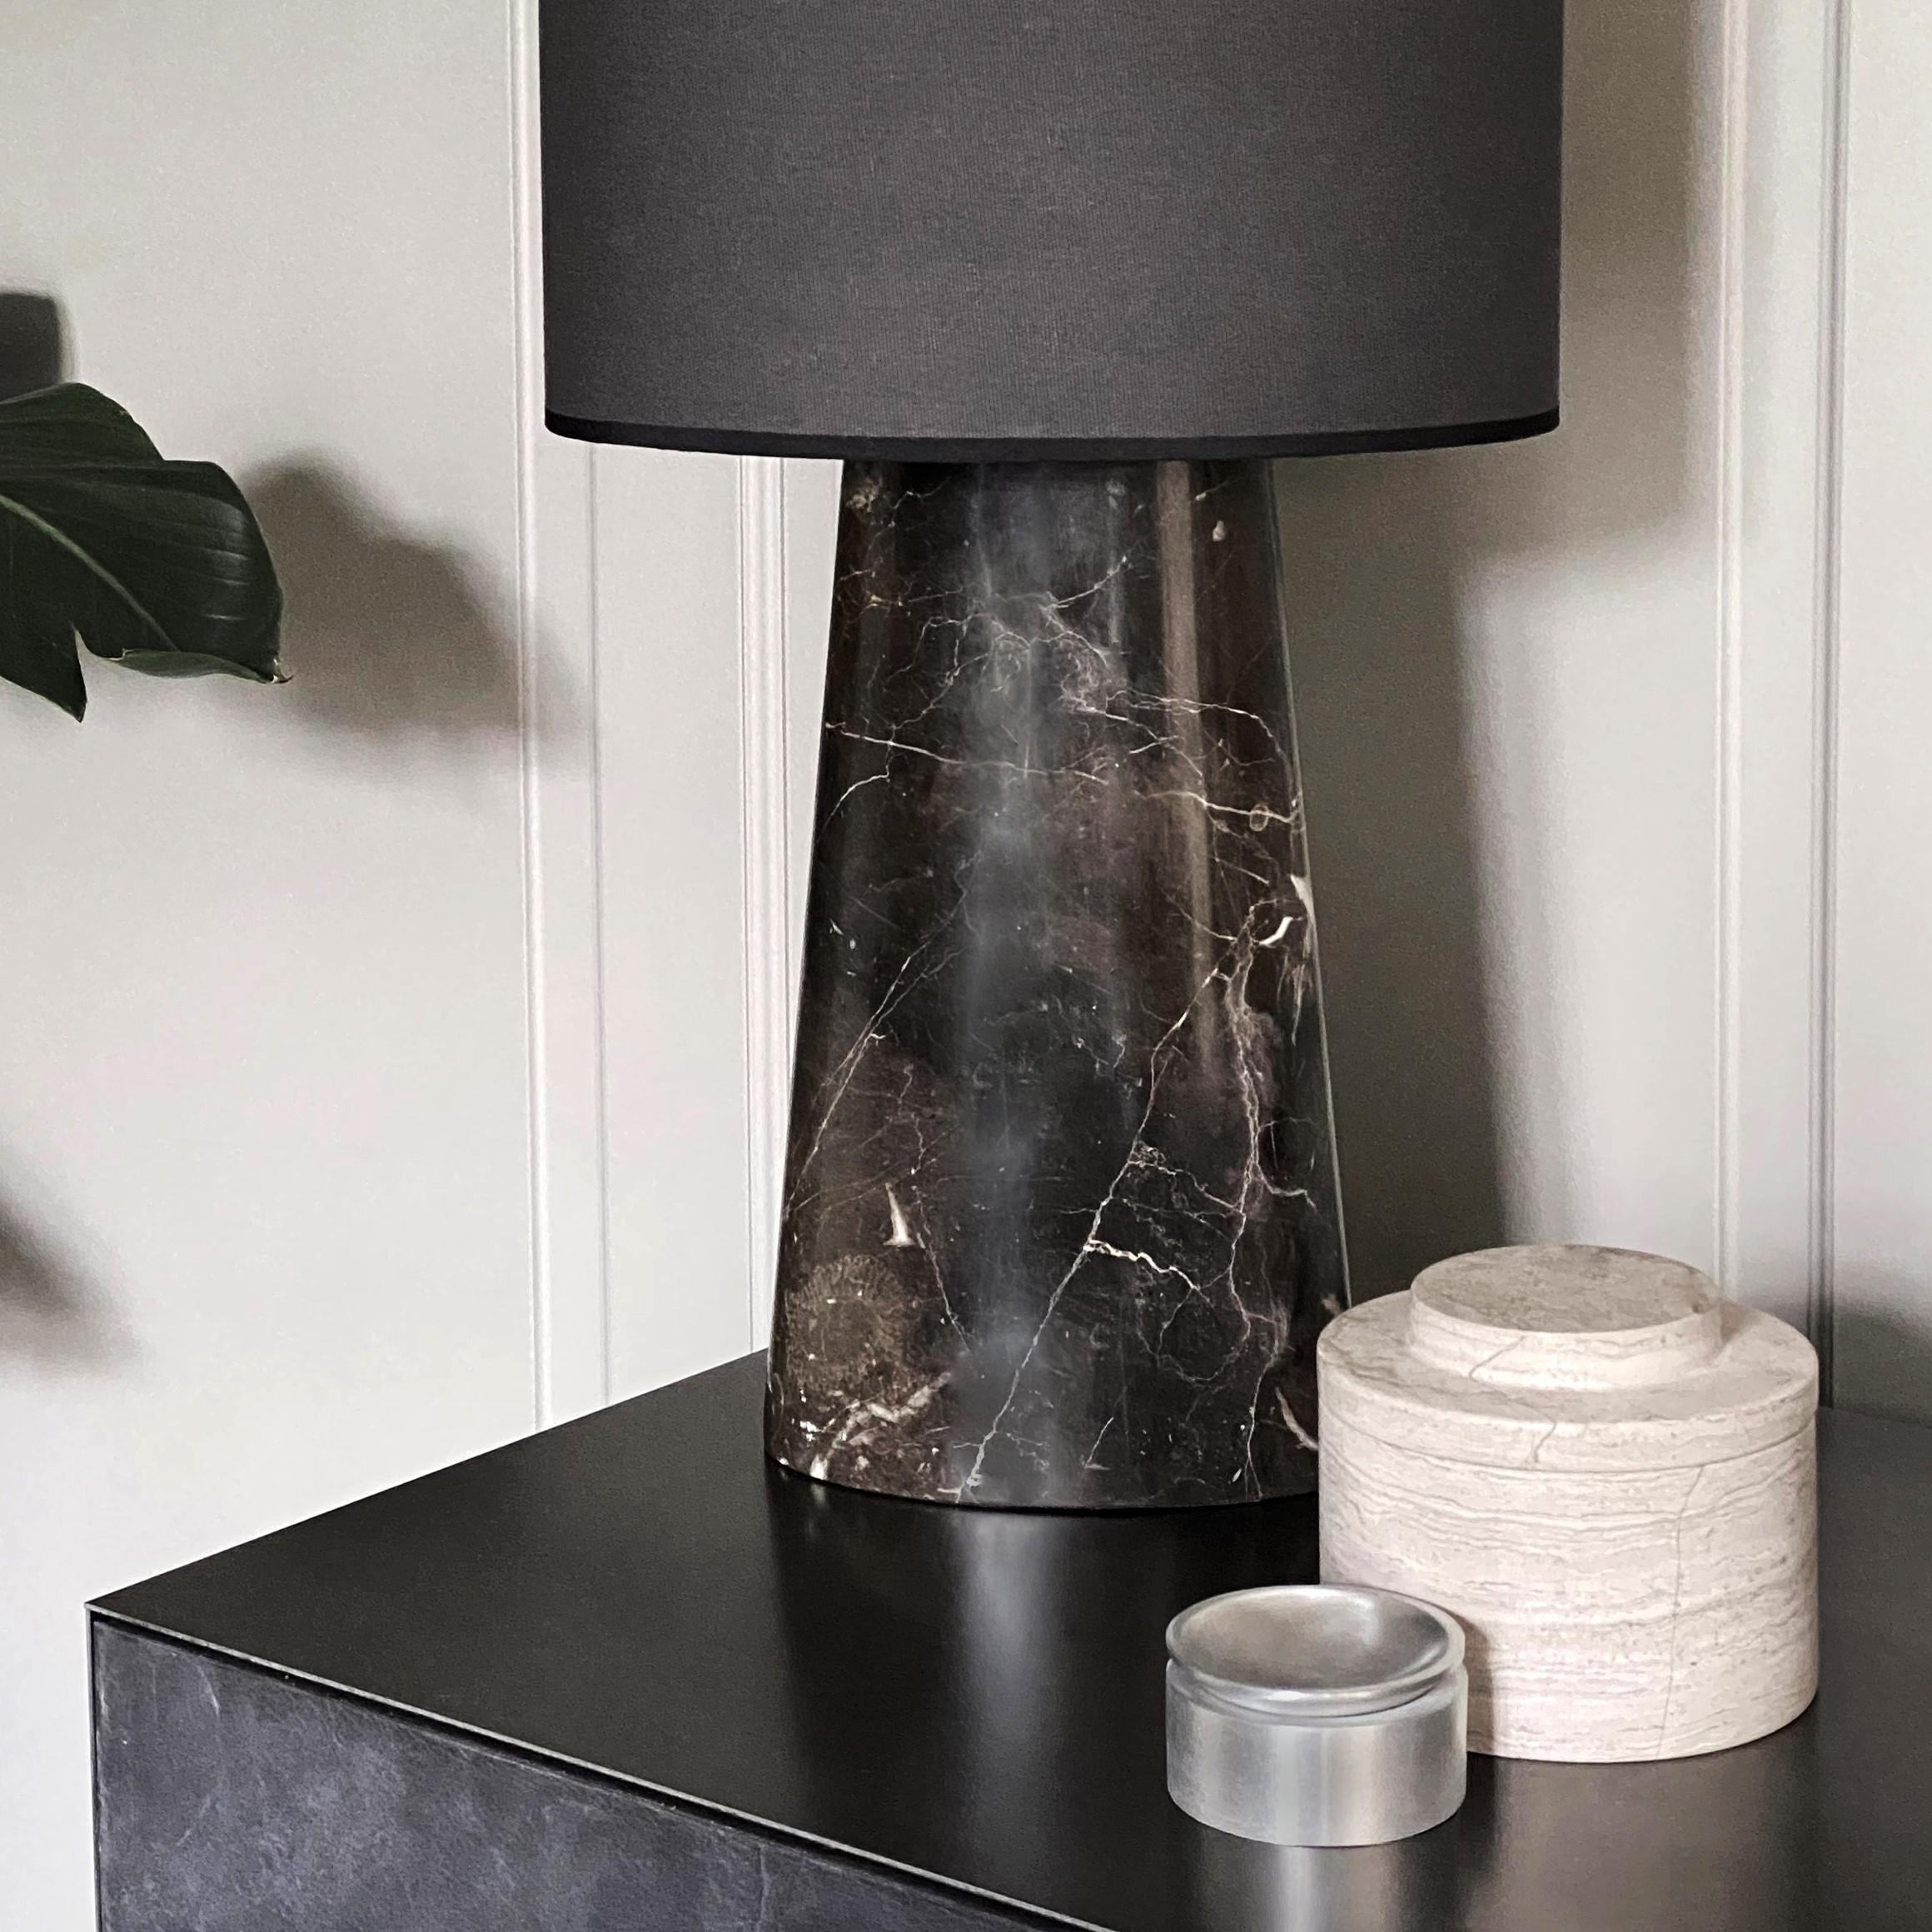 La boîte AURA, de couleur gris craie, est un magnifique pot ou boîte en marbre avec un couvercle. La boîte a un aspect exclusif et intemporel qui orne tous les espaces. Le marbre étant une pierre naturelle, sa couleur et sa structure peuvent varier